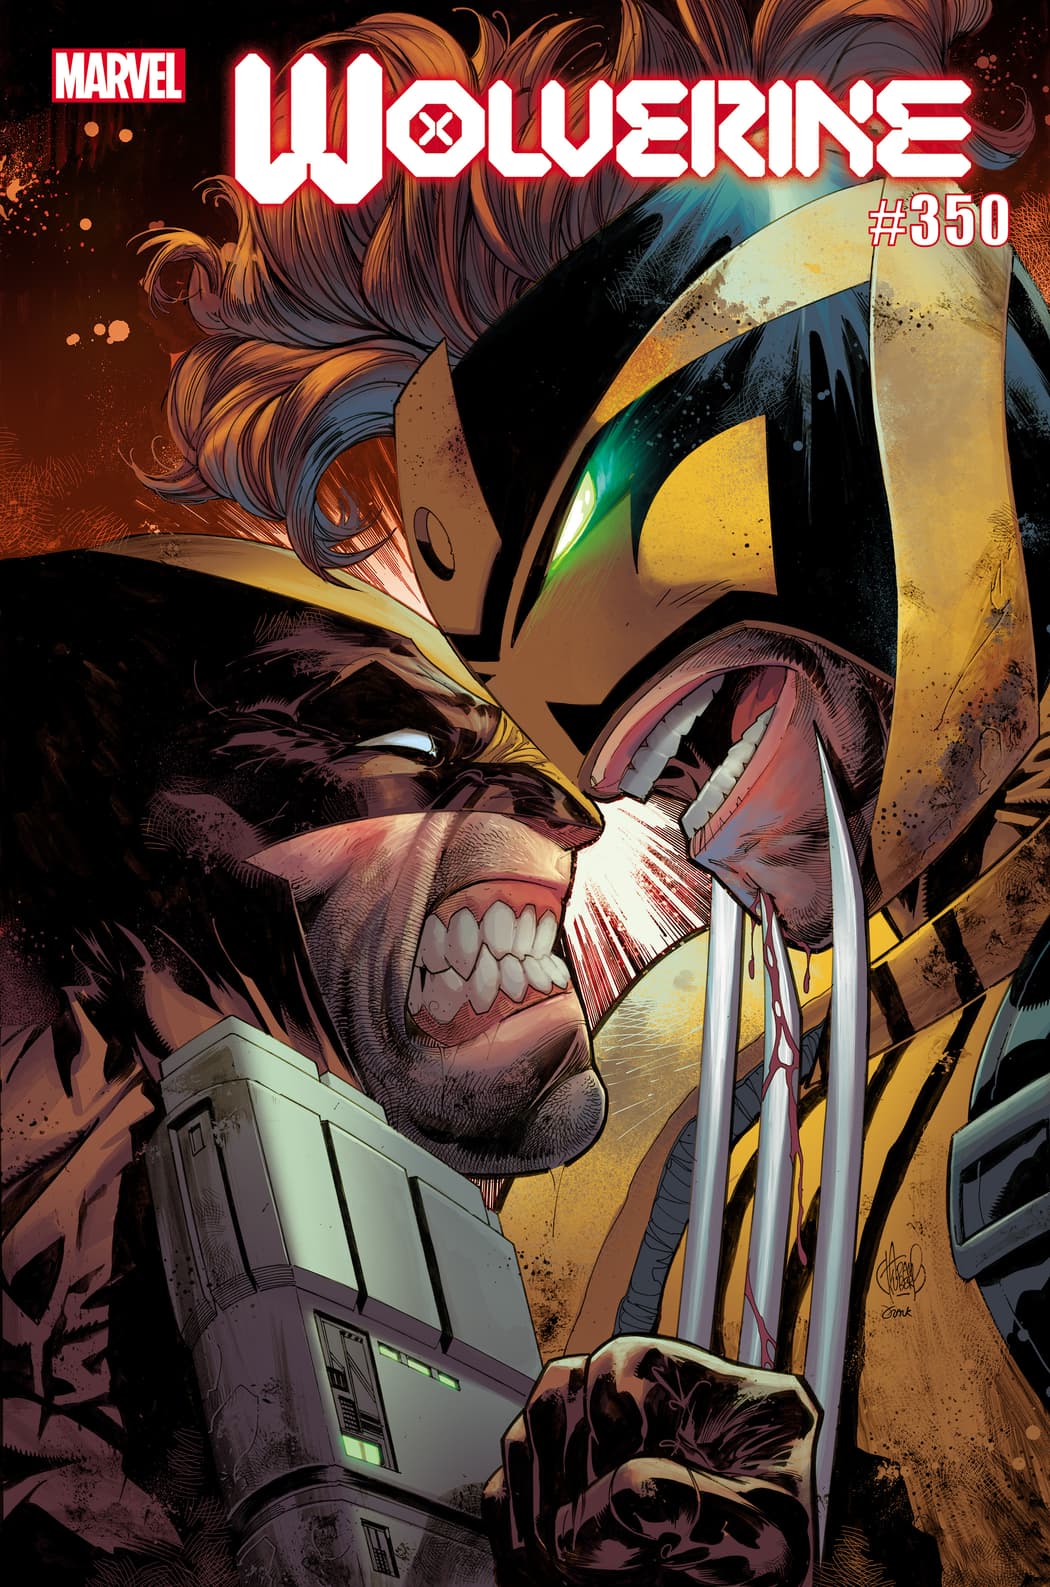 Wolverine #350